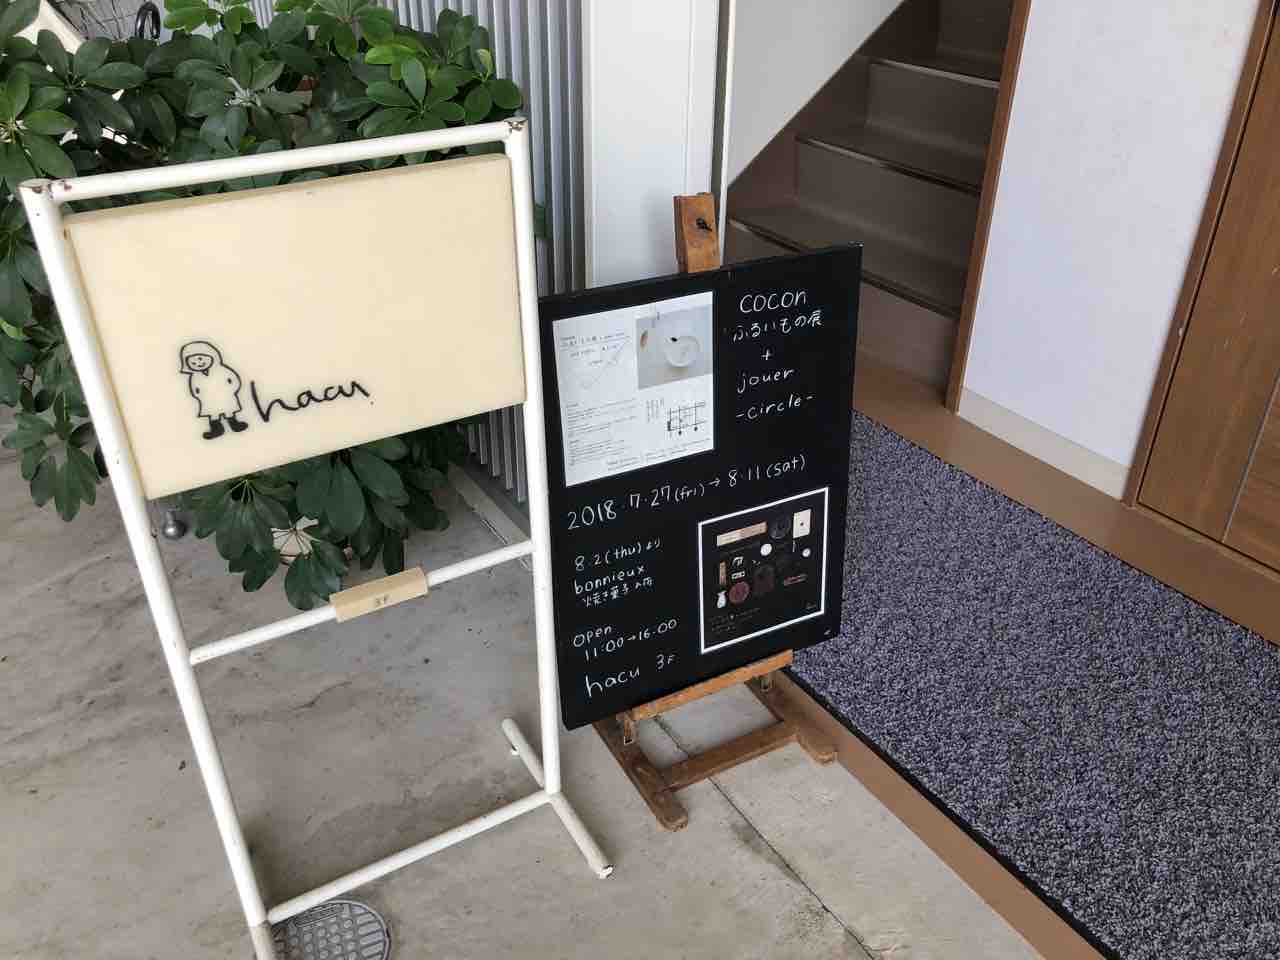 『靴下のhacu』店舗入口の看板